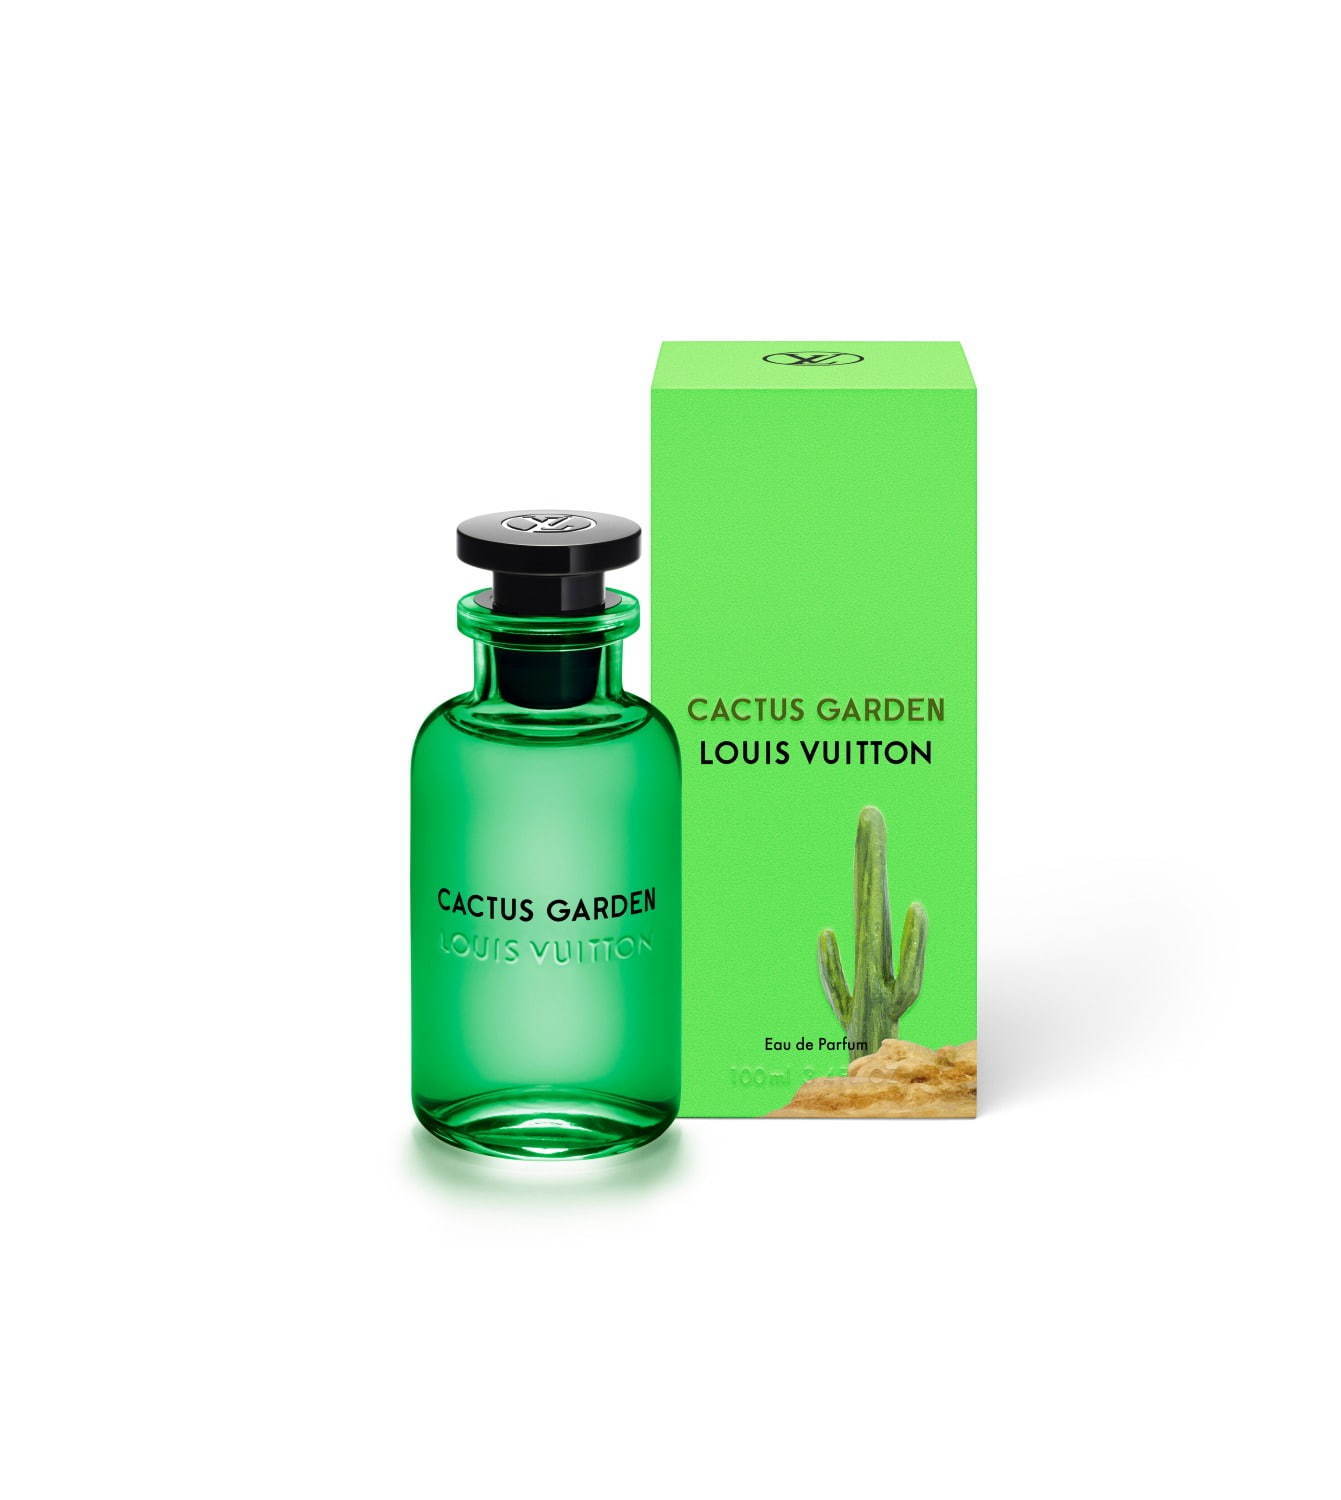 Cactus Garden Louis Vuitton parfum - un nouveau parfum pour homme et femme 2019